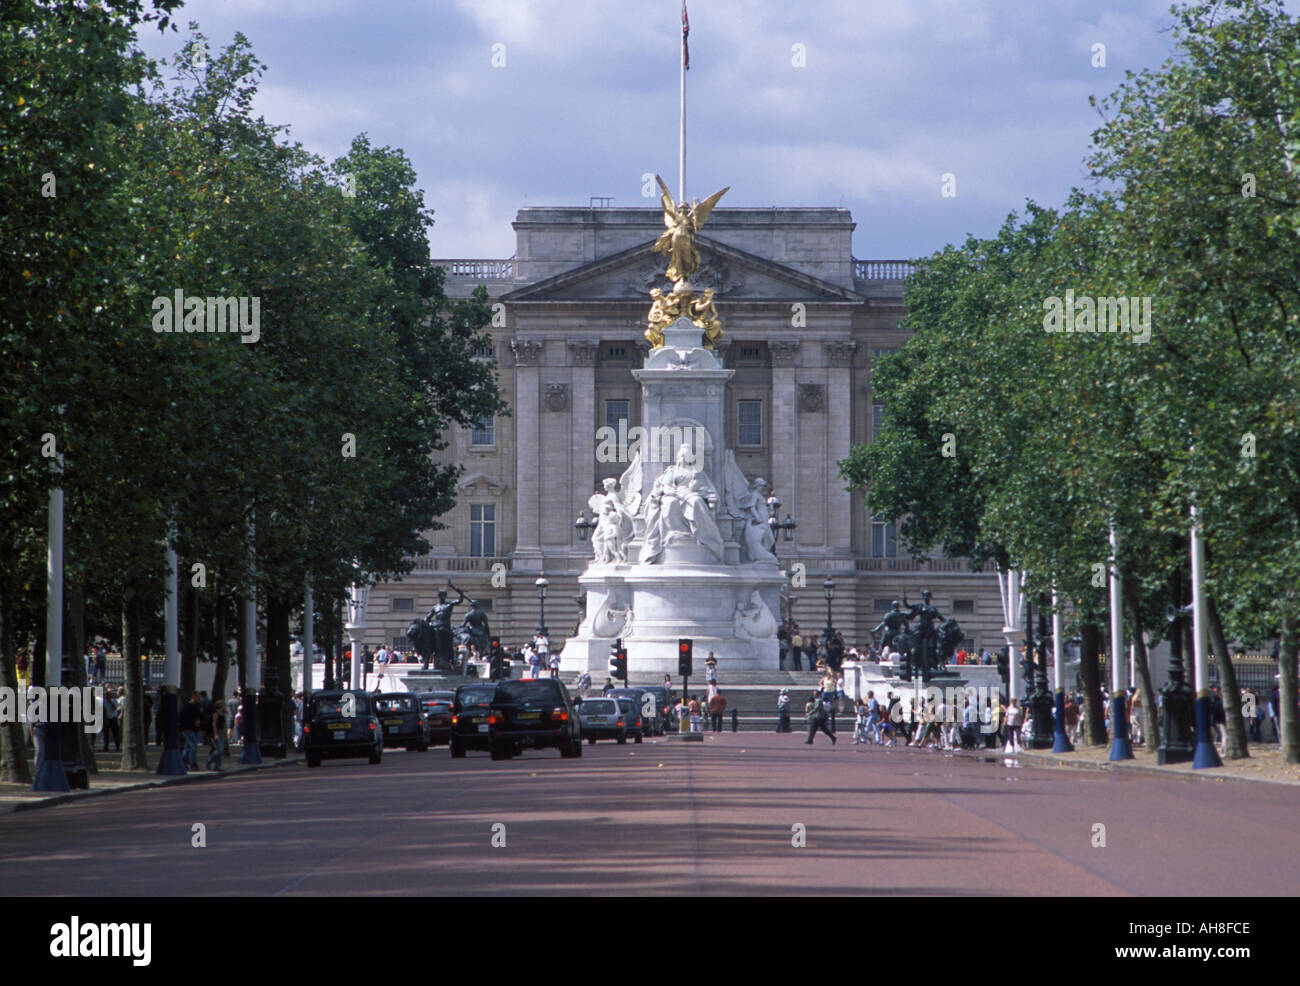 Una vista del Palacio Buchingham desde el Mall en el centro de Londres Foto de stock